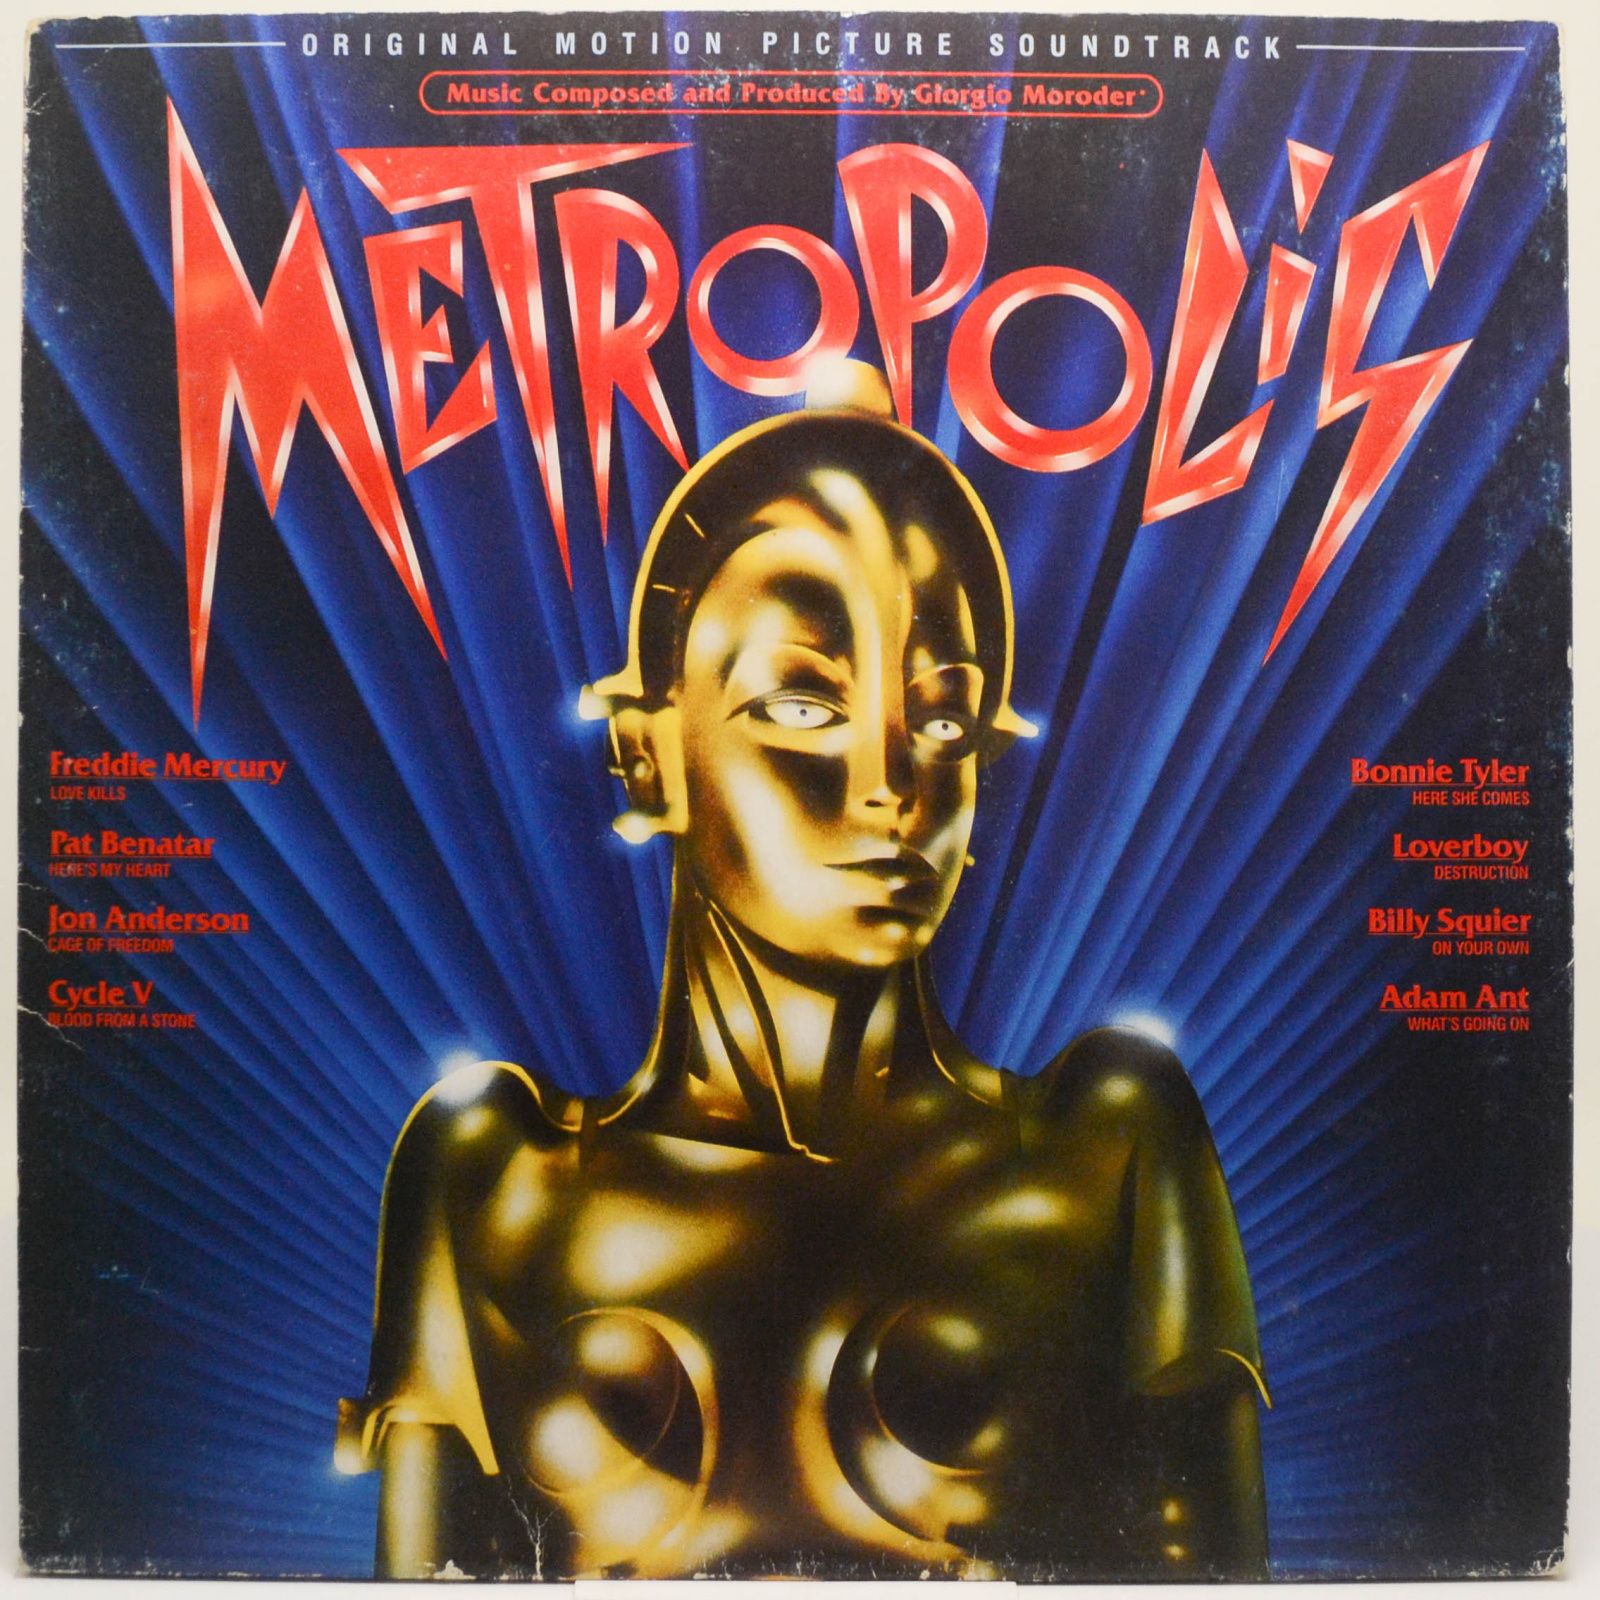 Metropolis (Original Motion Picture Soundtrack), 1984